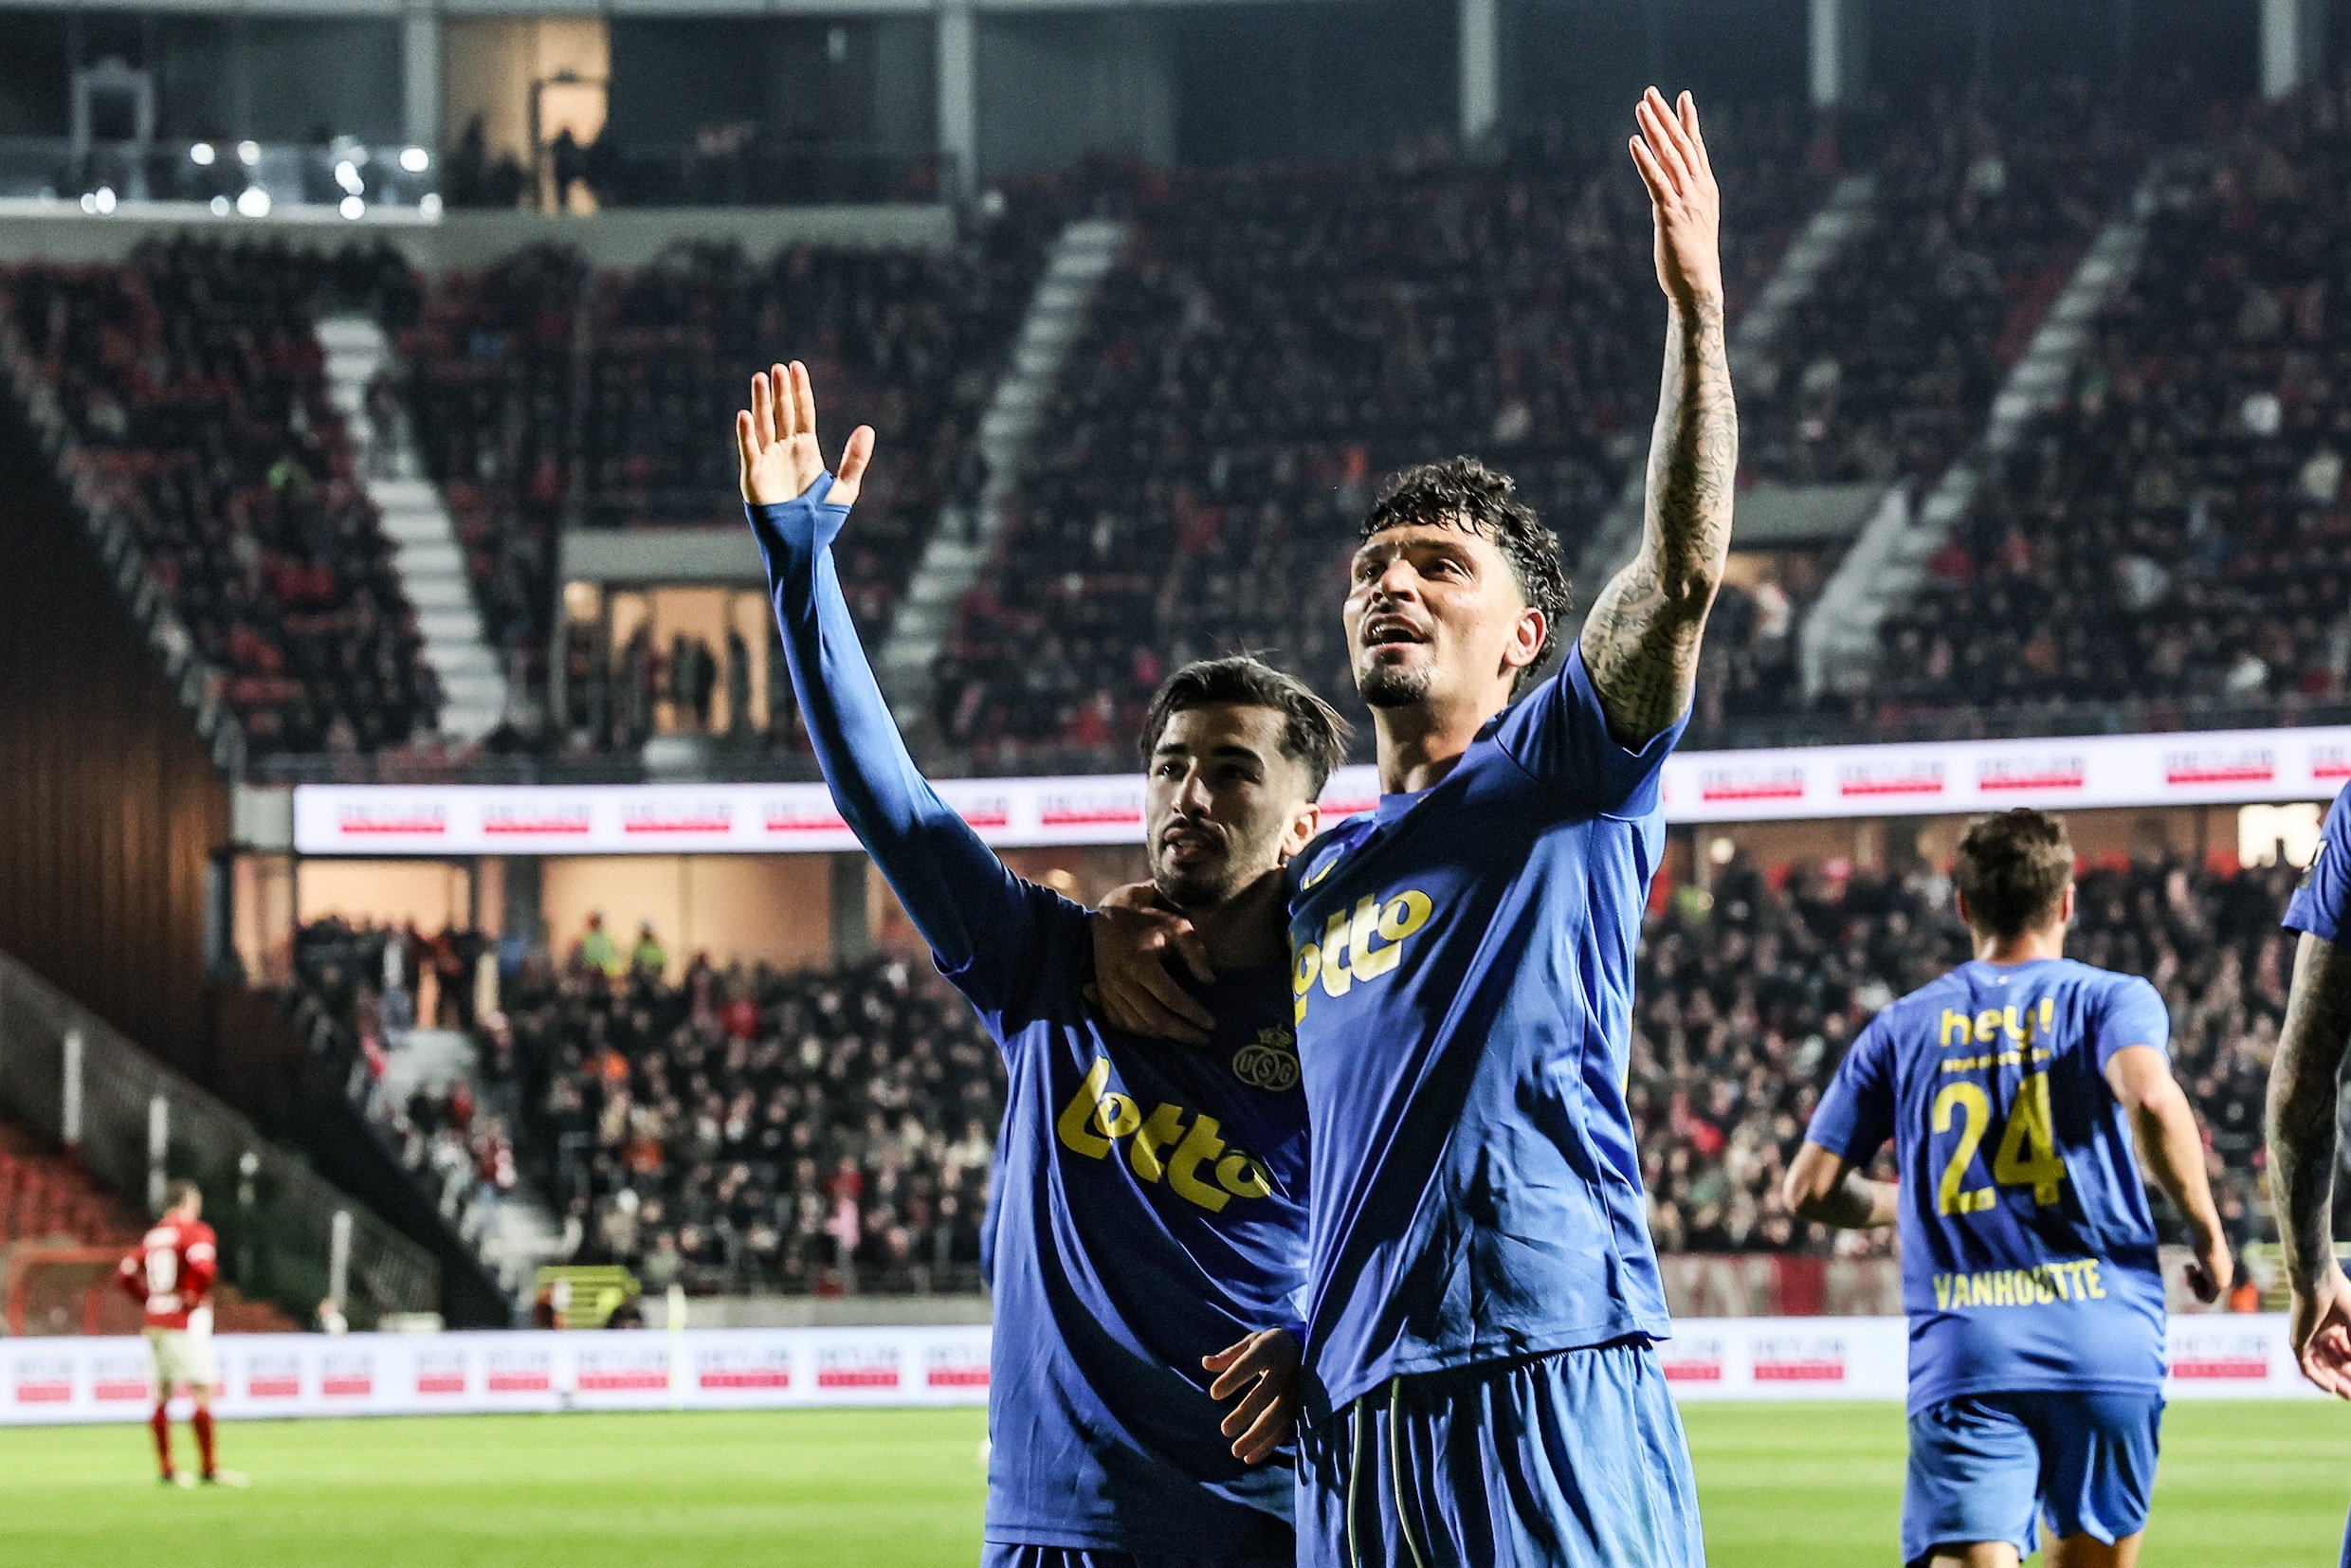 Union spoelt reeks nederlagen door met 0-3-zege tegen Antwerp en blijft in titelrace